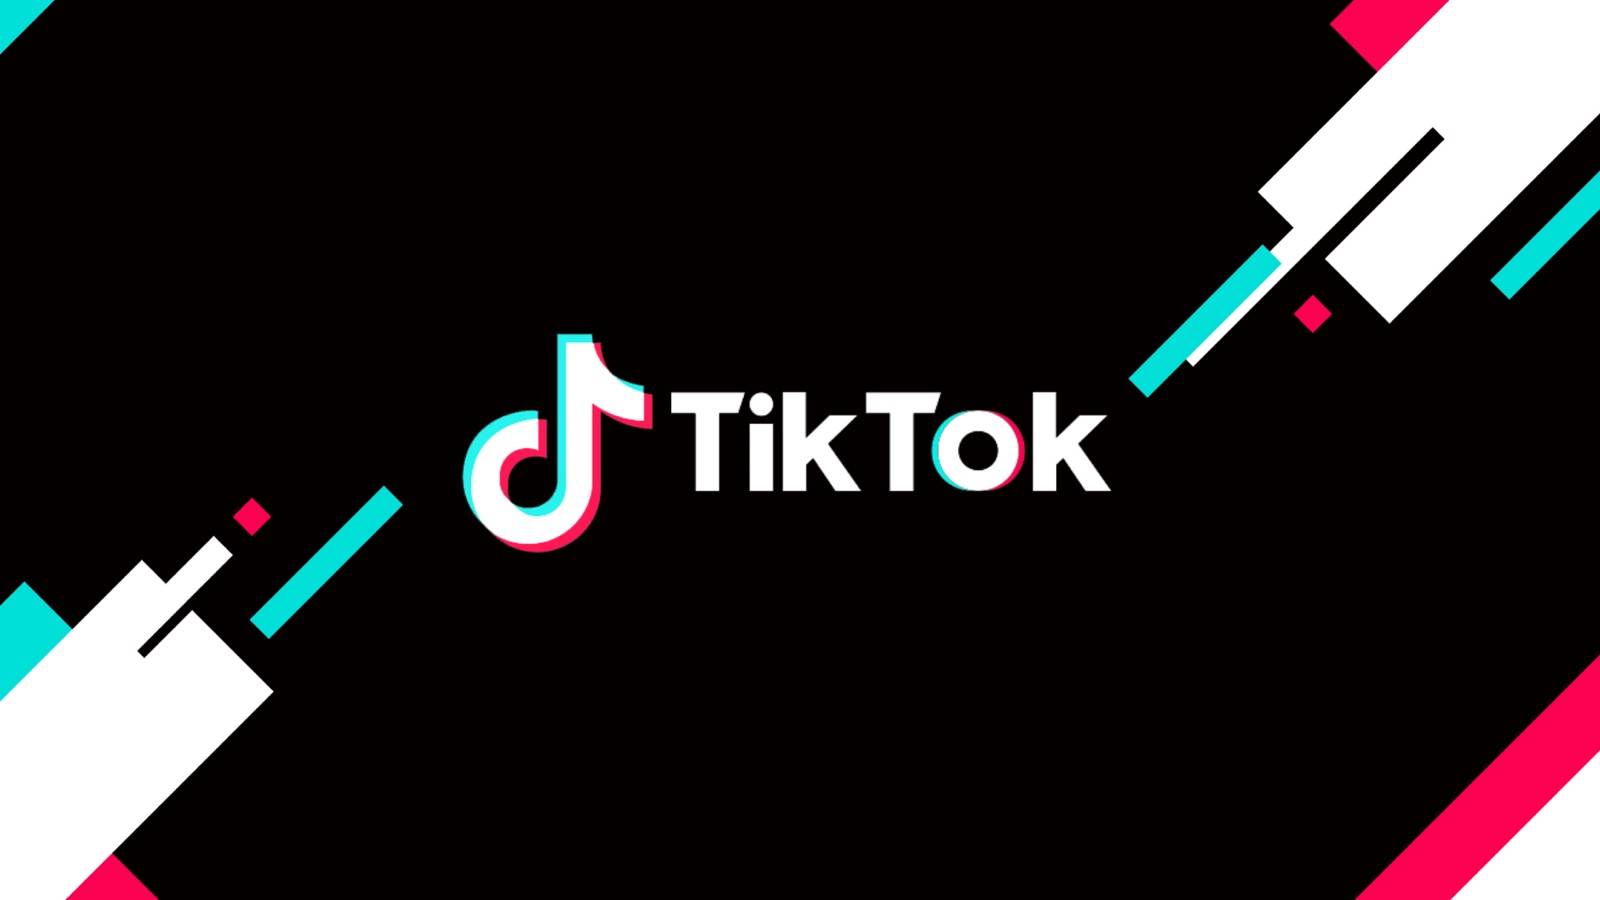 TikTok Update a fost Lansat, cu ce Noutati Vine pentru Telefoane